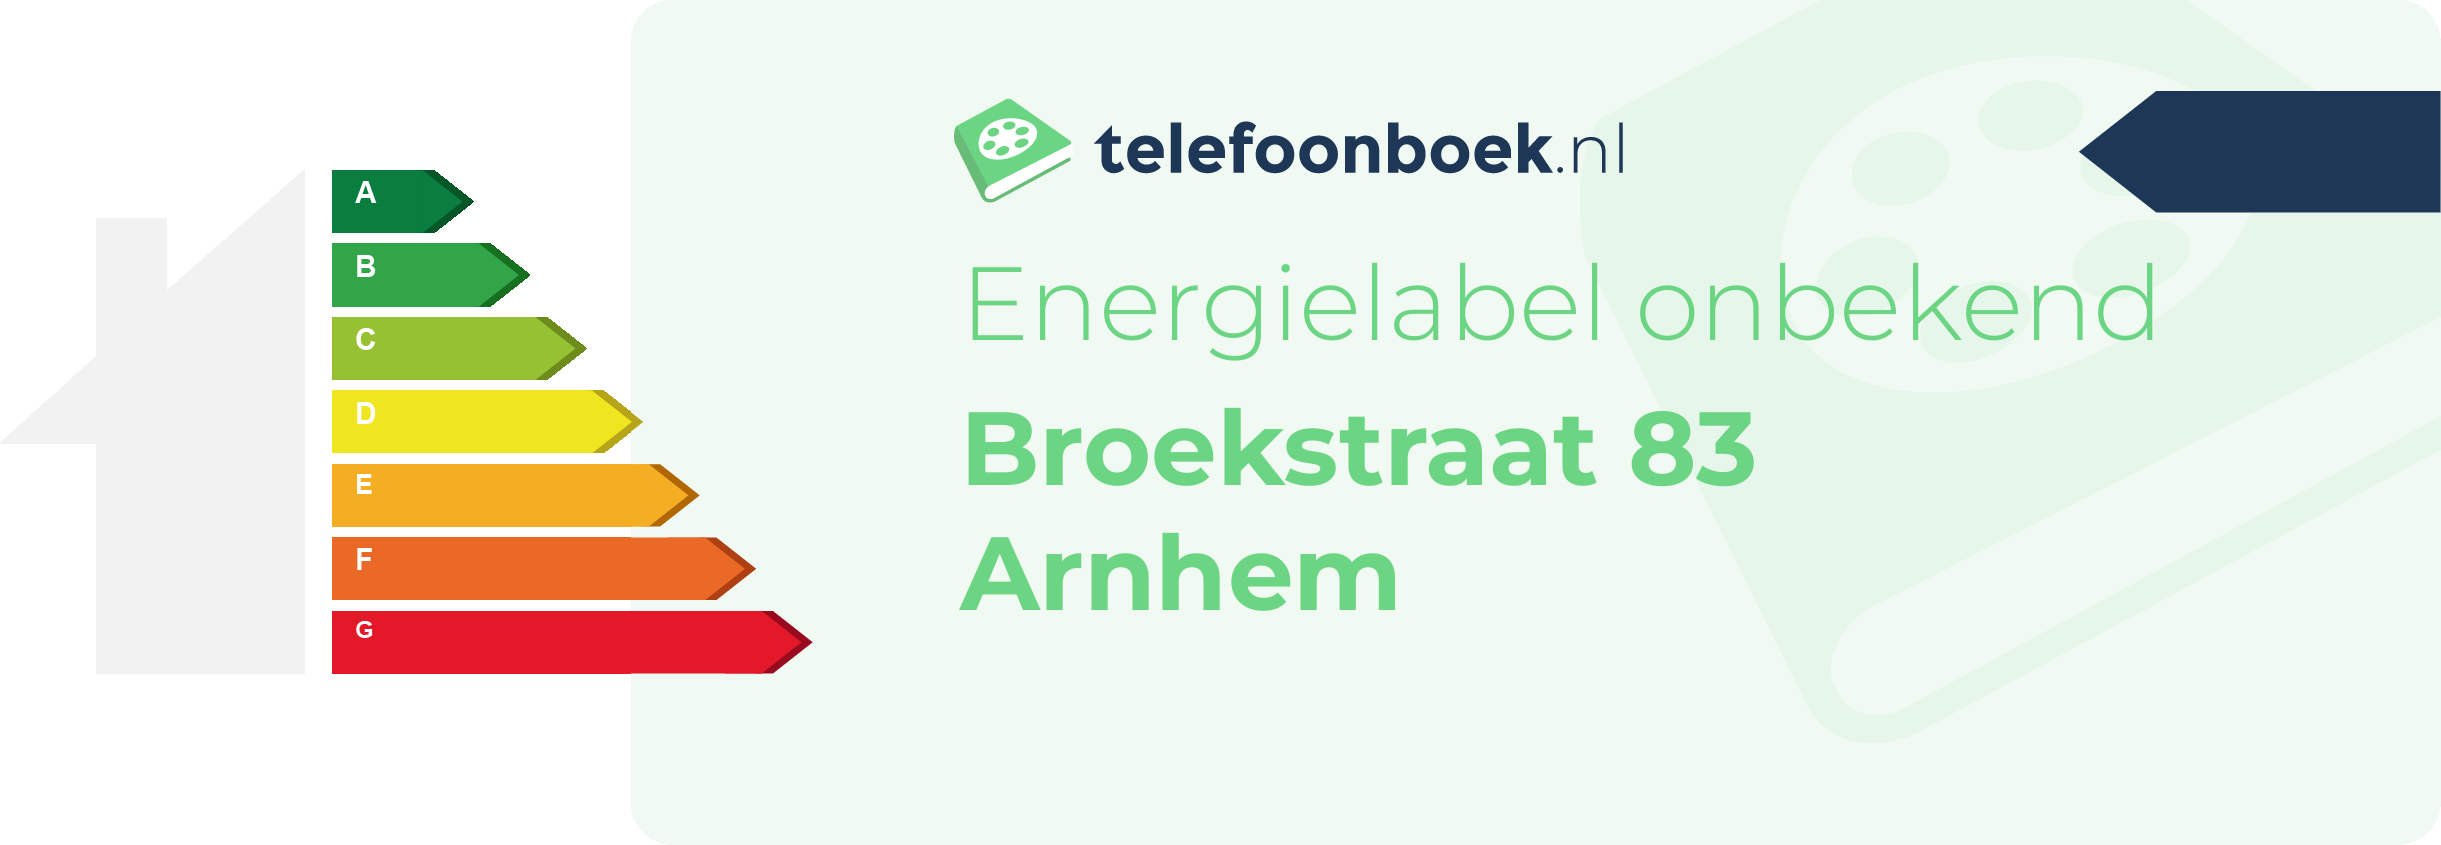 Energielabel Broekstraat 83 Arnhem